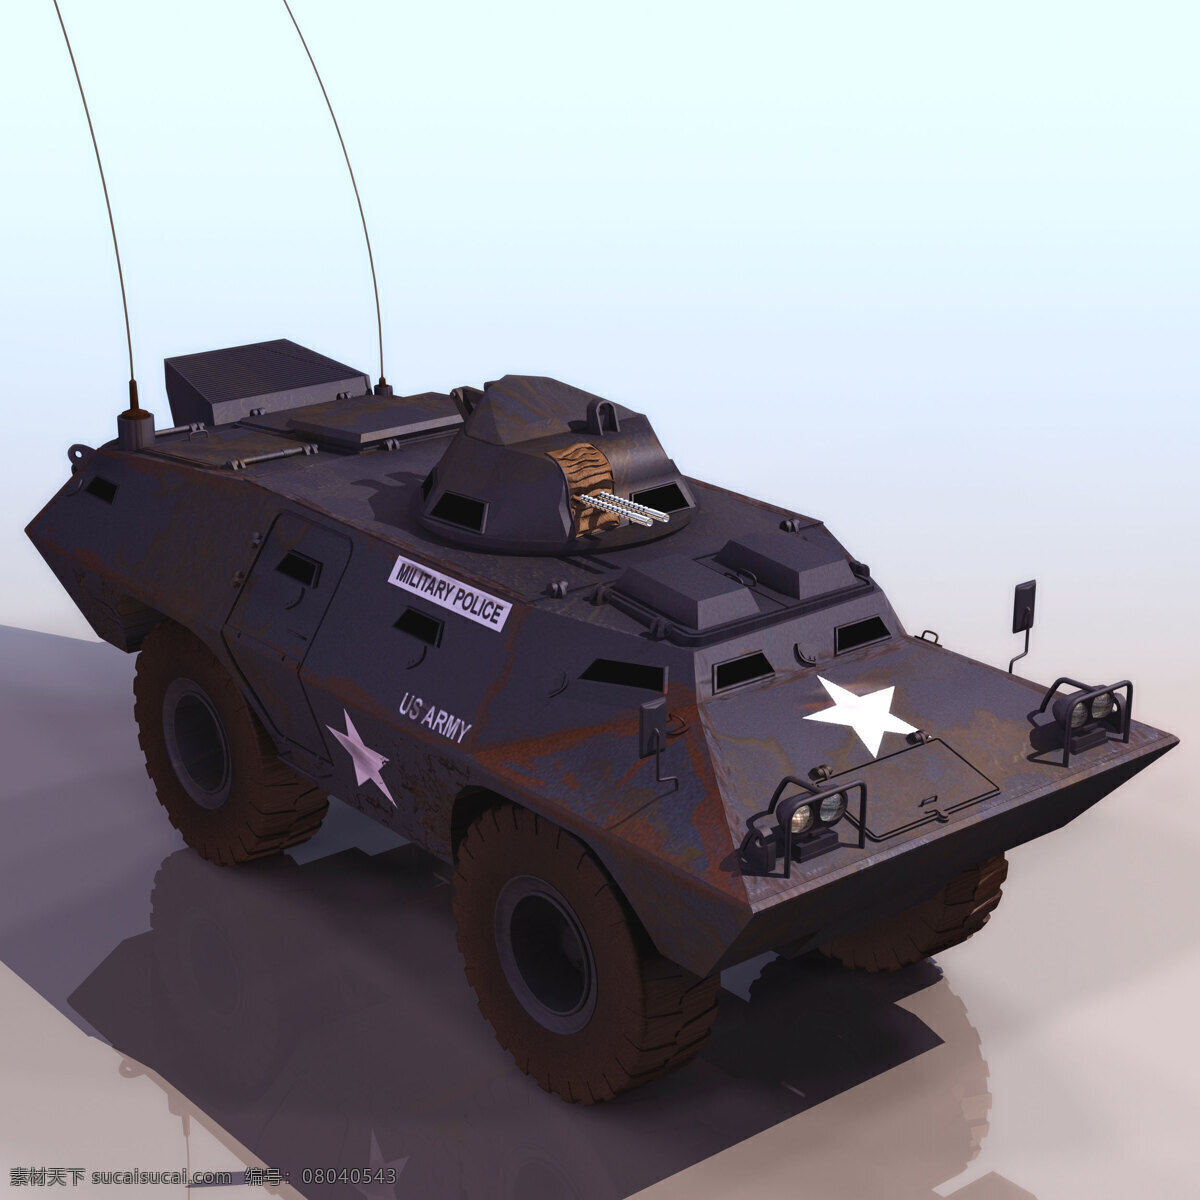 坦克 模型 v100 军事模型 坦克模型 陆军武器库 3d模型素材 其他3d模型